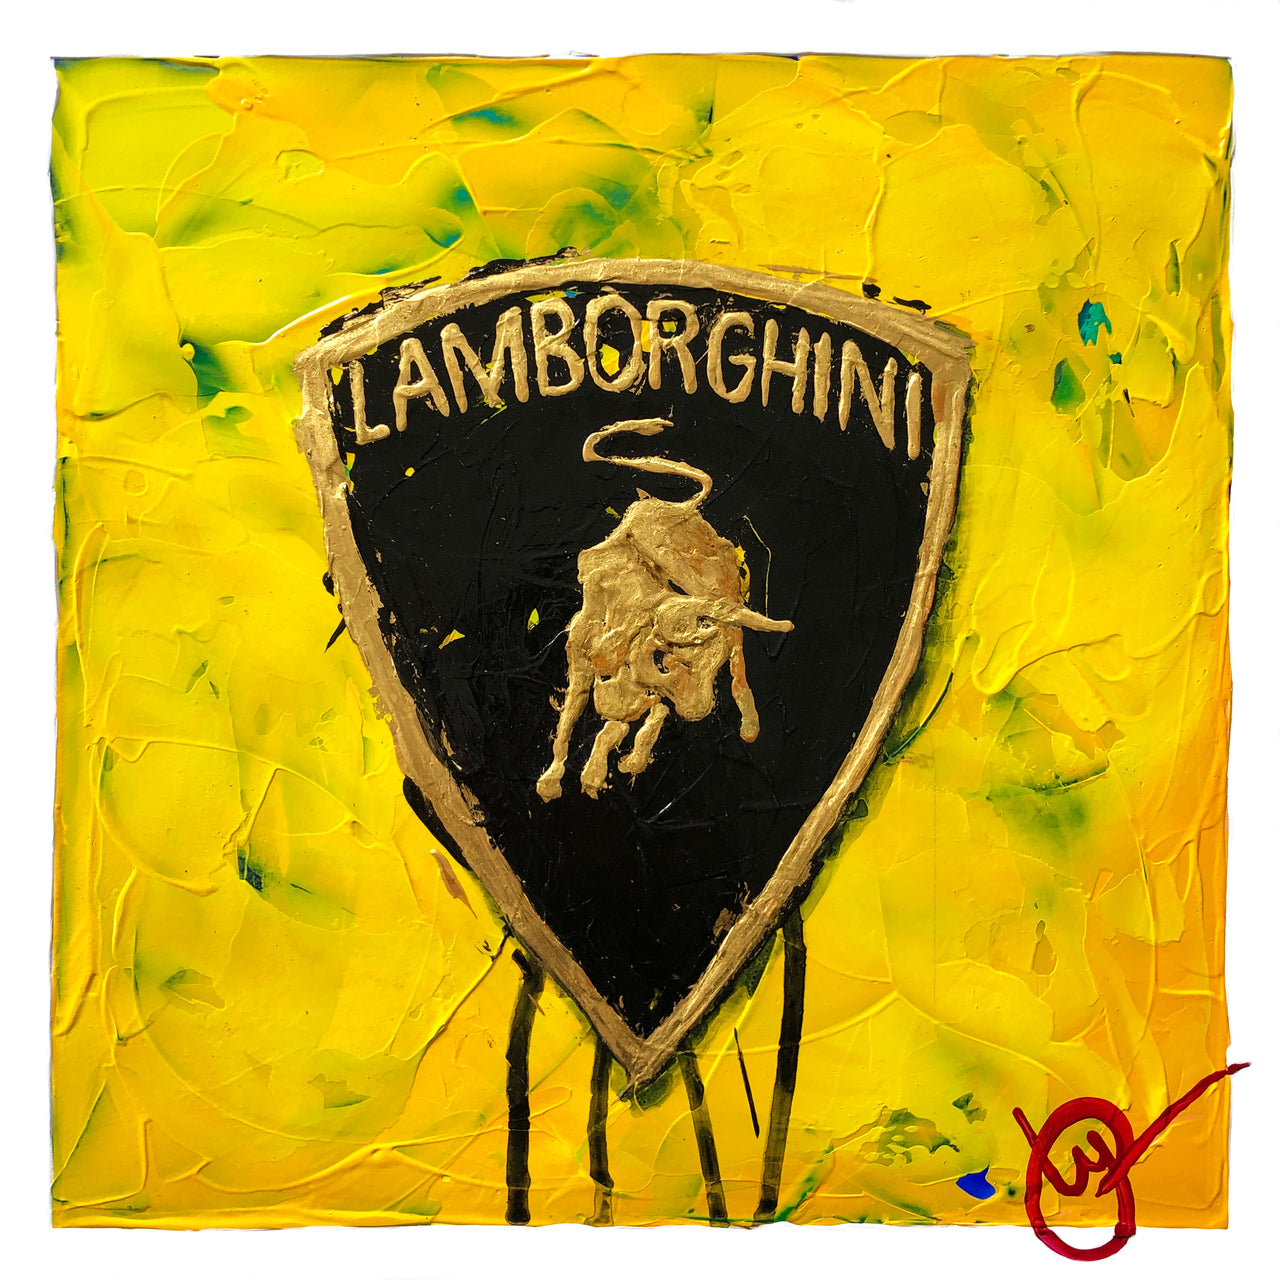 Lamborghini Emblem 12 - Yellow